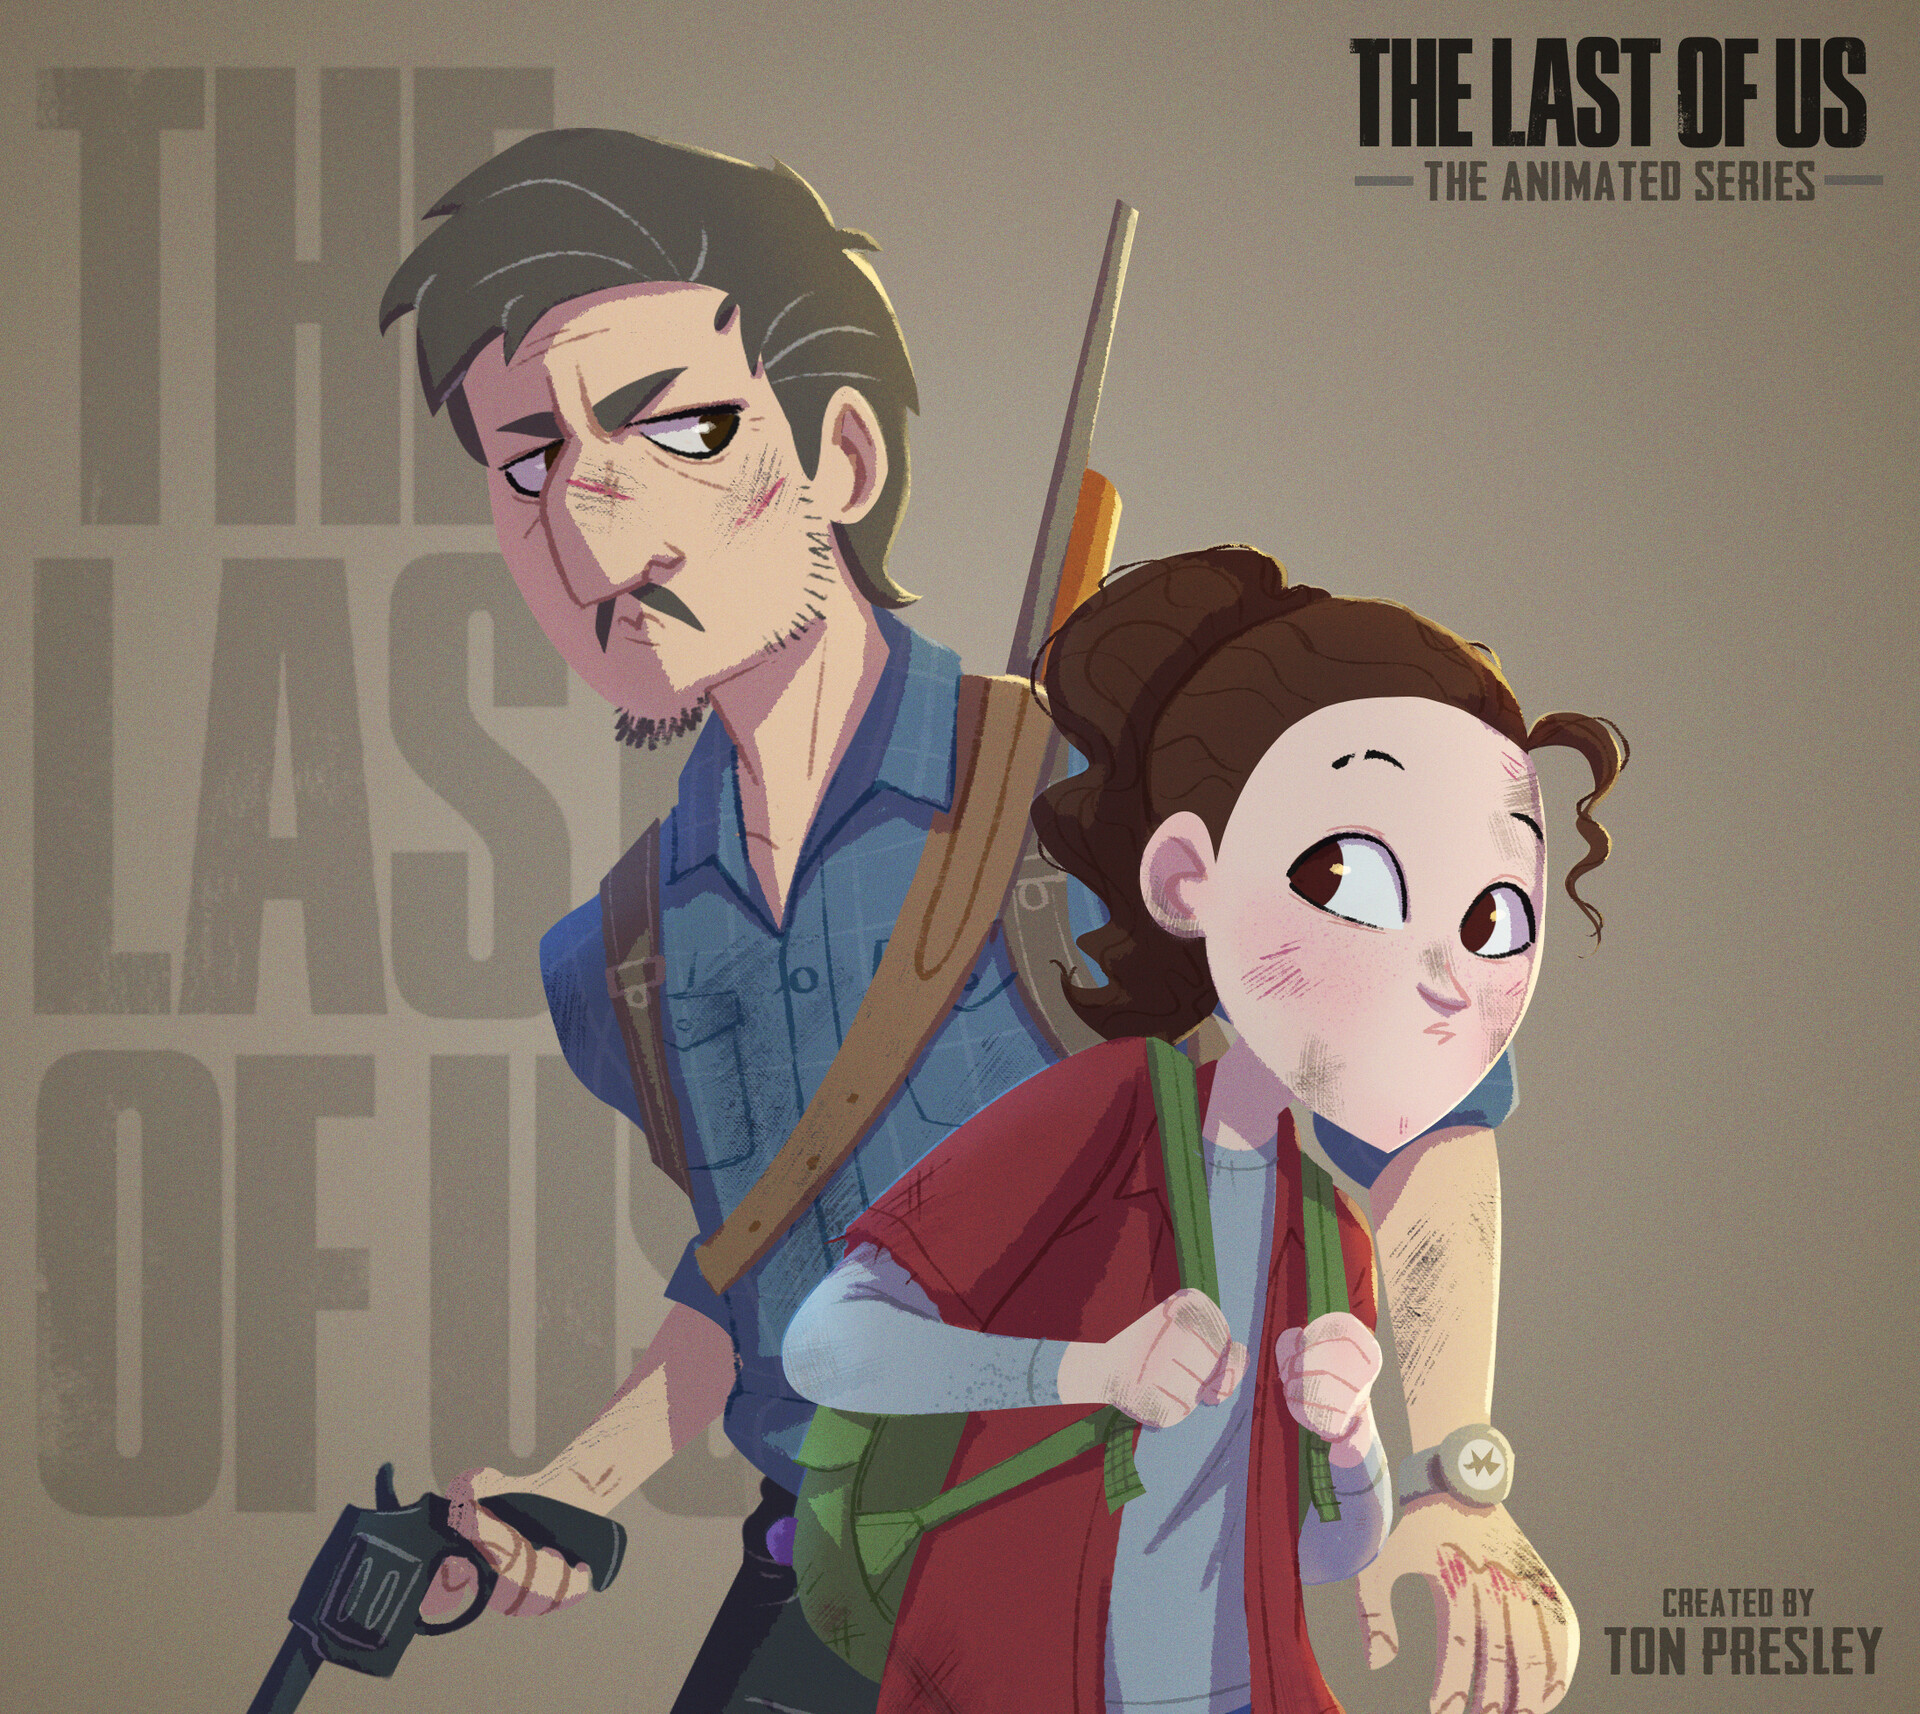 ArtStation - The Last Of Us - Animated Series